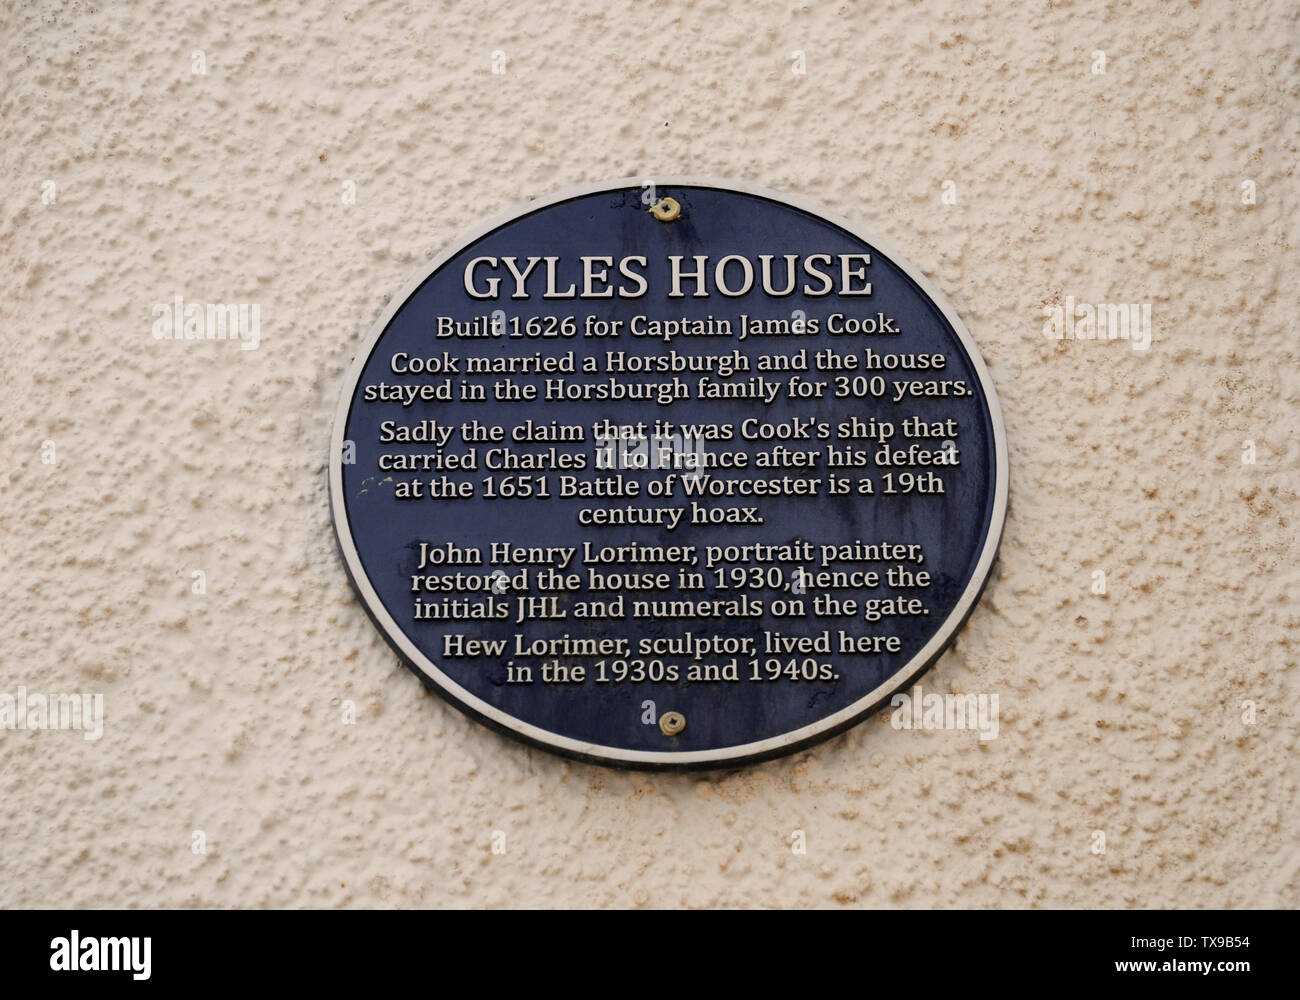 Gyles house nel villaggio scozzese di Pittenween fu costruito, come la targa blu dice, è stato costruito per un CAP. James Cook, non l'inglese Capt. Cucinare! Foto Stock